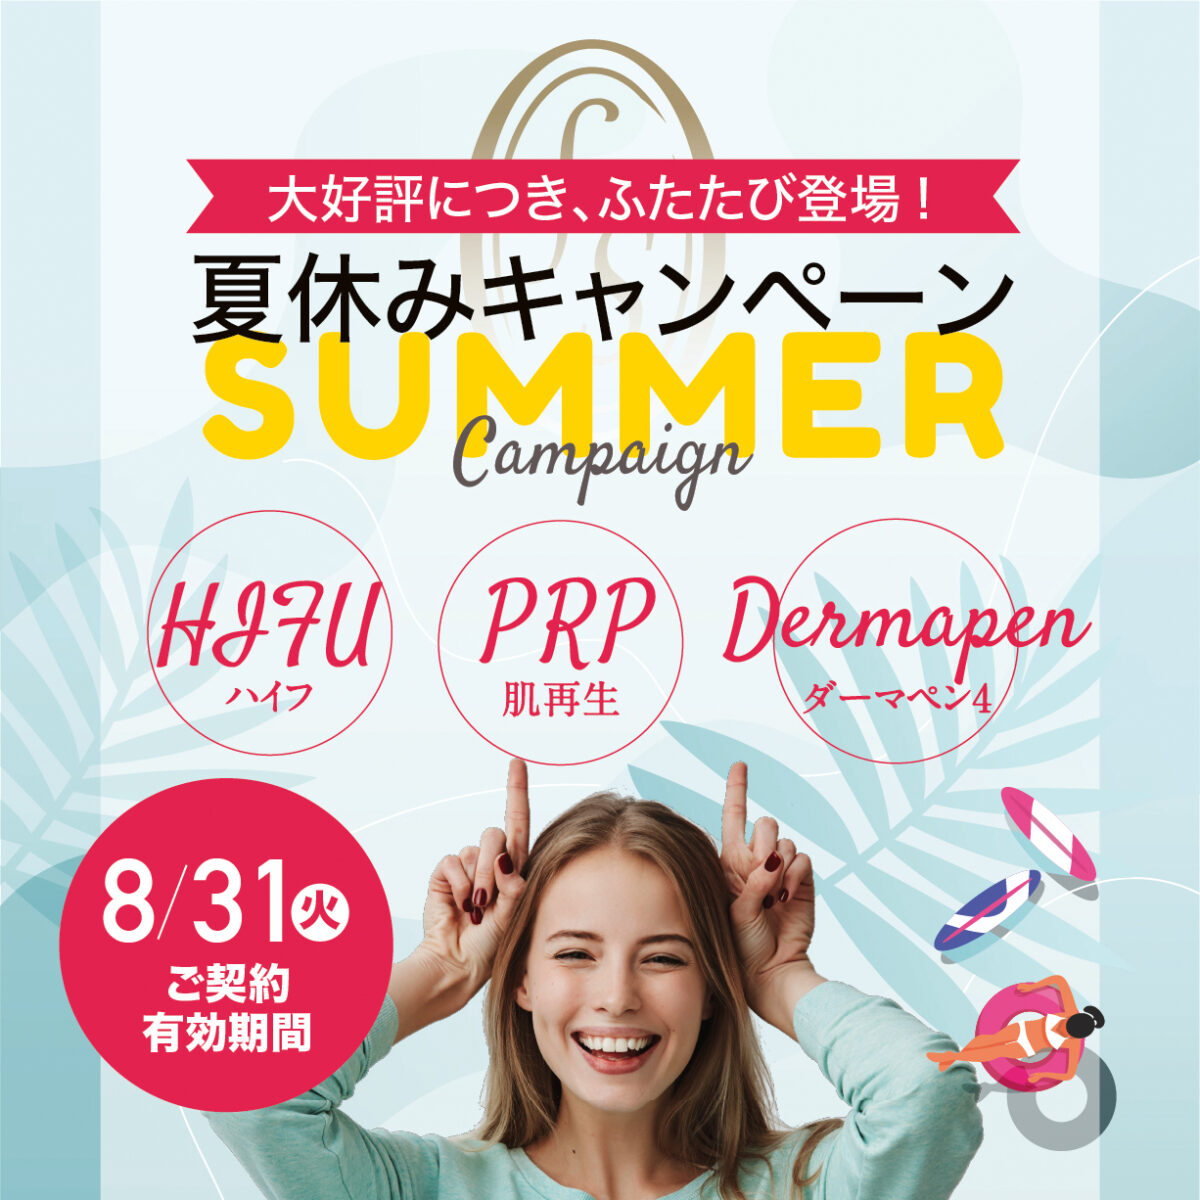 神戸夏休みキャンペーン、20代限定PRP、HIFUハイフ、ダーマペン4